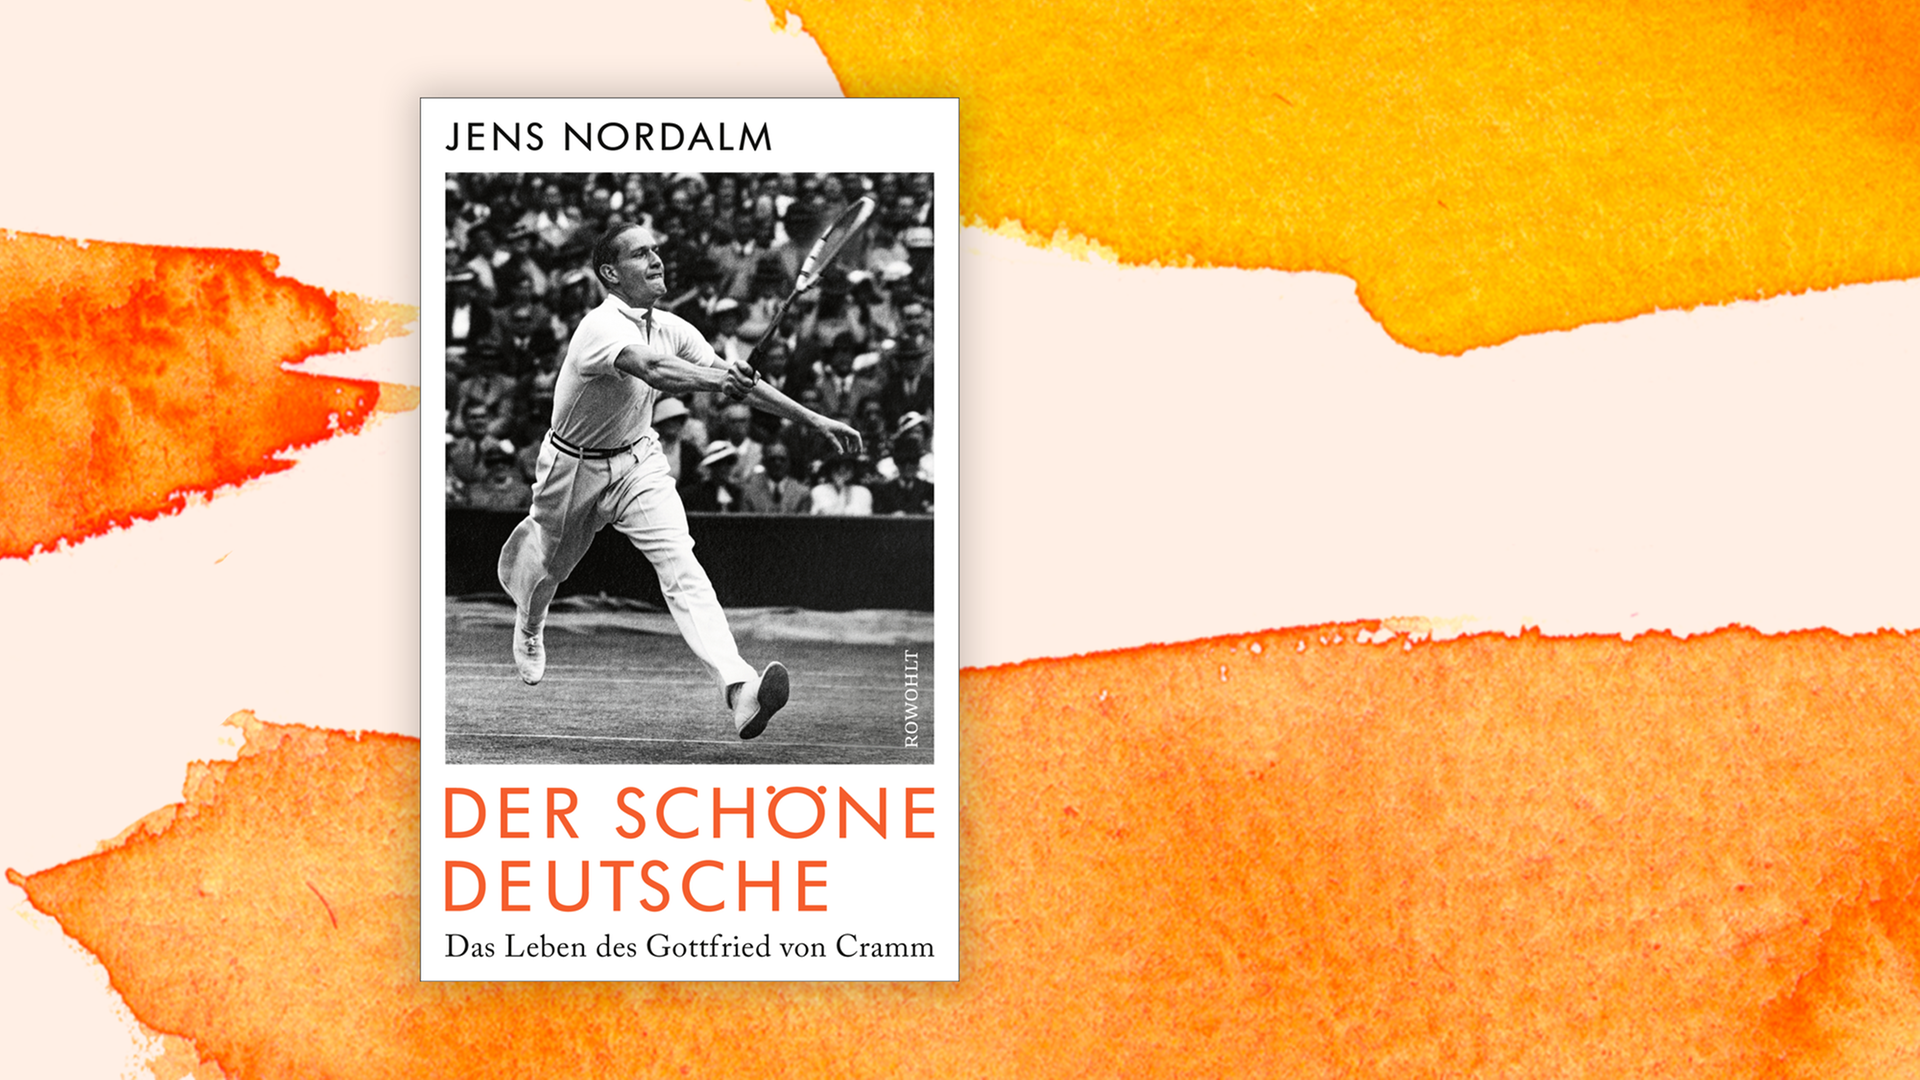 Zu sehen ist das Cover des Buches "Der schöne Deutsche. Das Leben des Gottfried von Cramm" von Jens Nordalm.